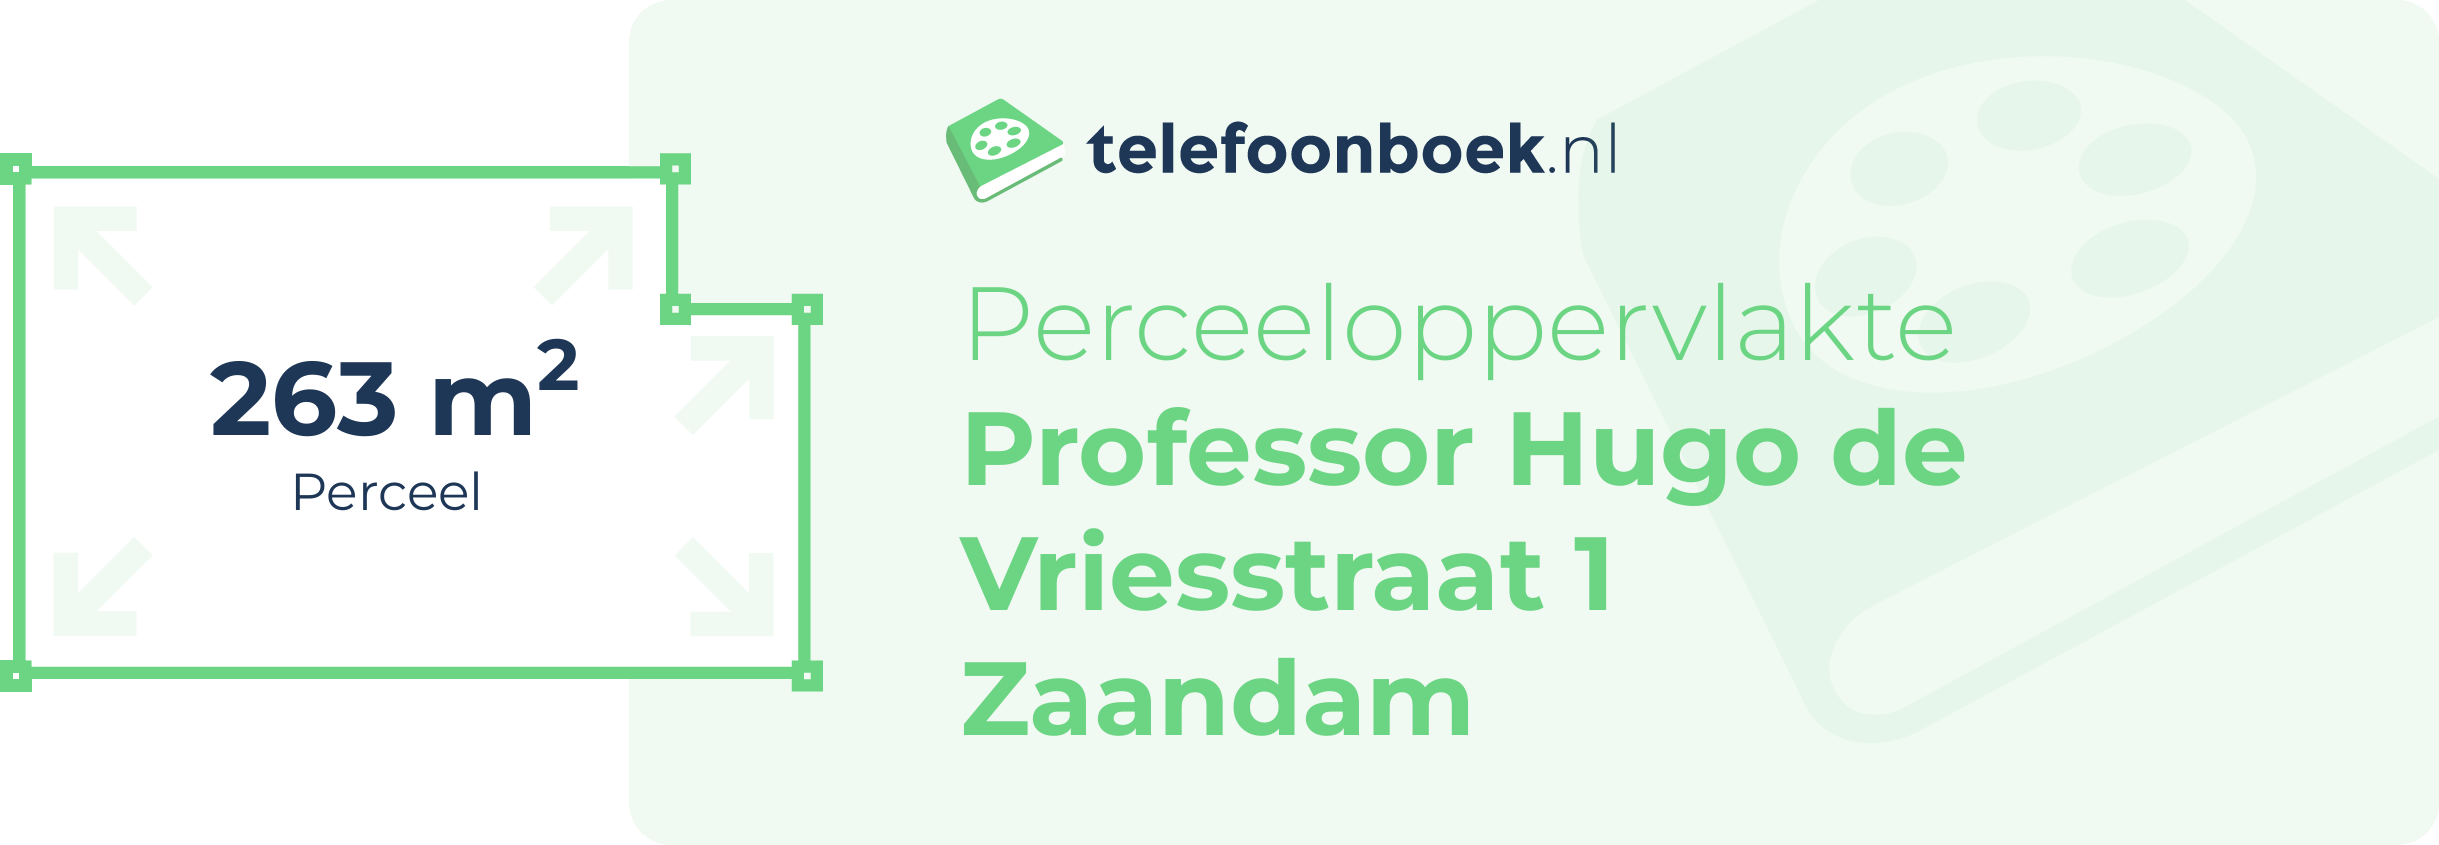 Perceeloppervlakte Professor Hugo De Vriesstraat 1 Zaandam